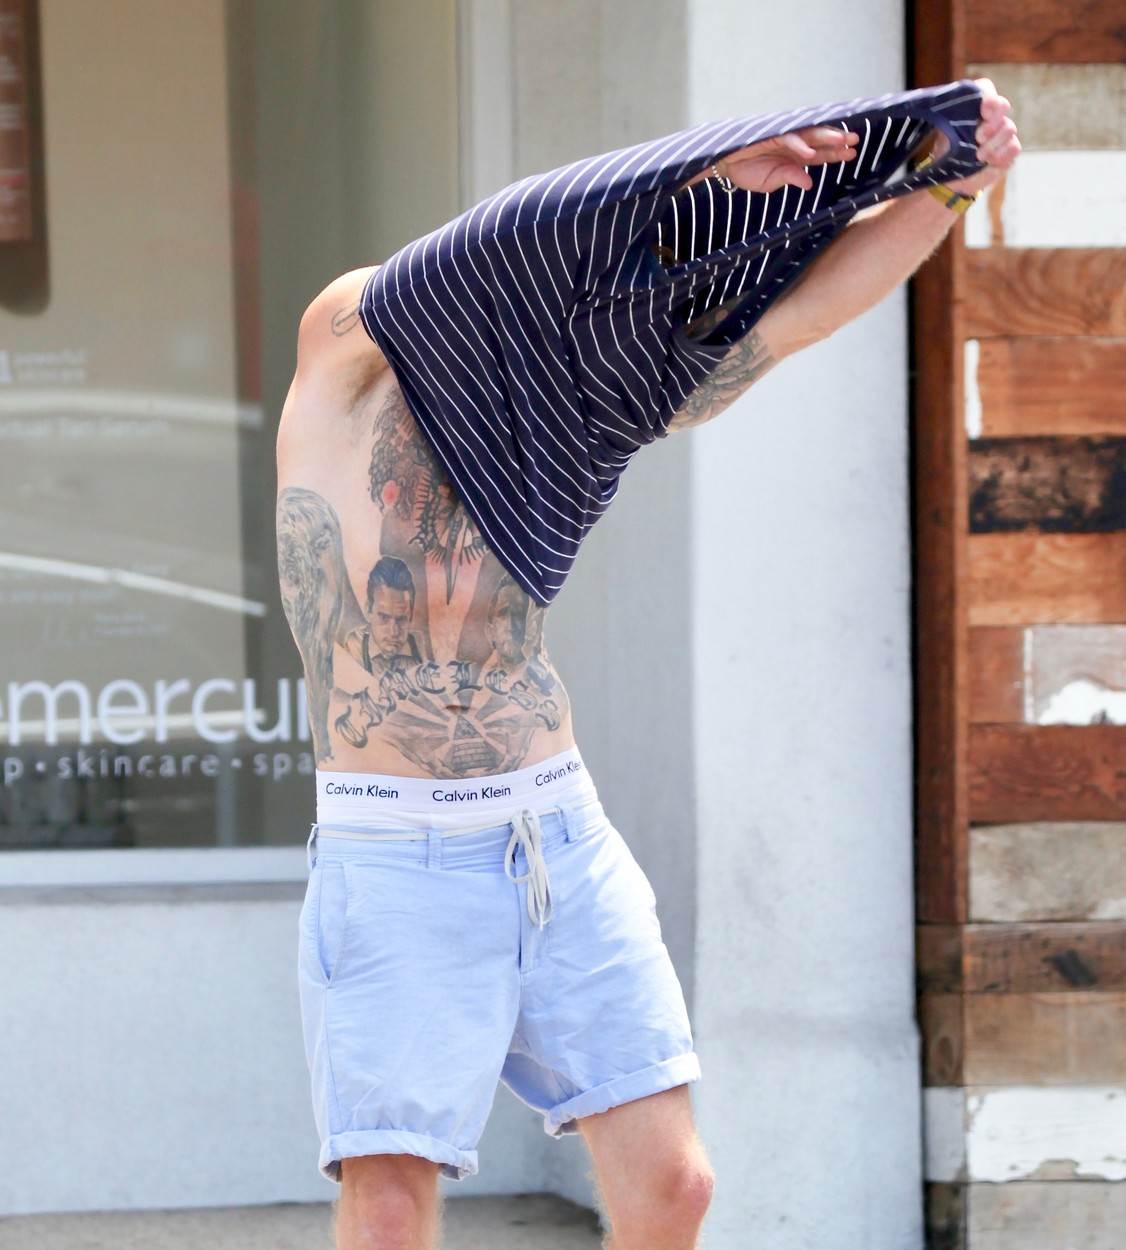  kameron daglas se skinuo na sred ulice i pokazao tetovaze 